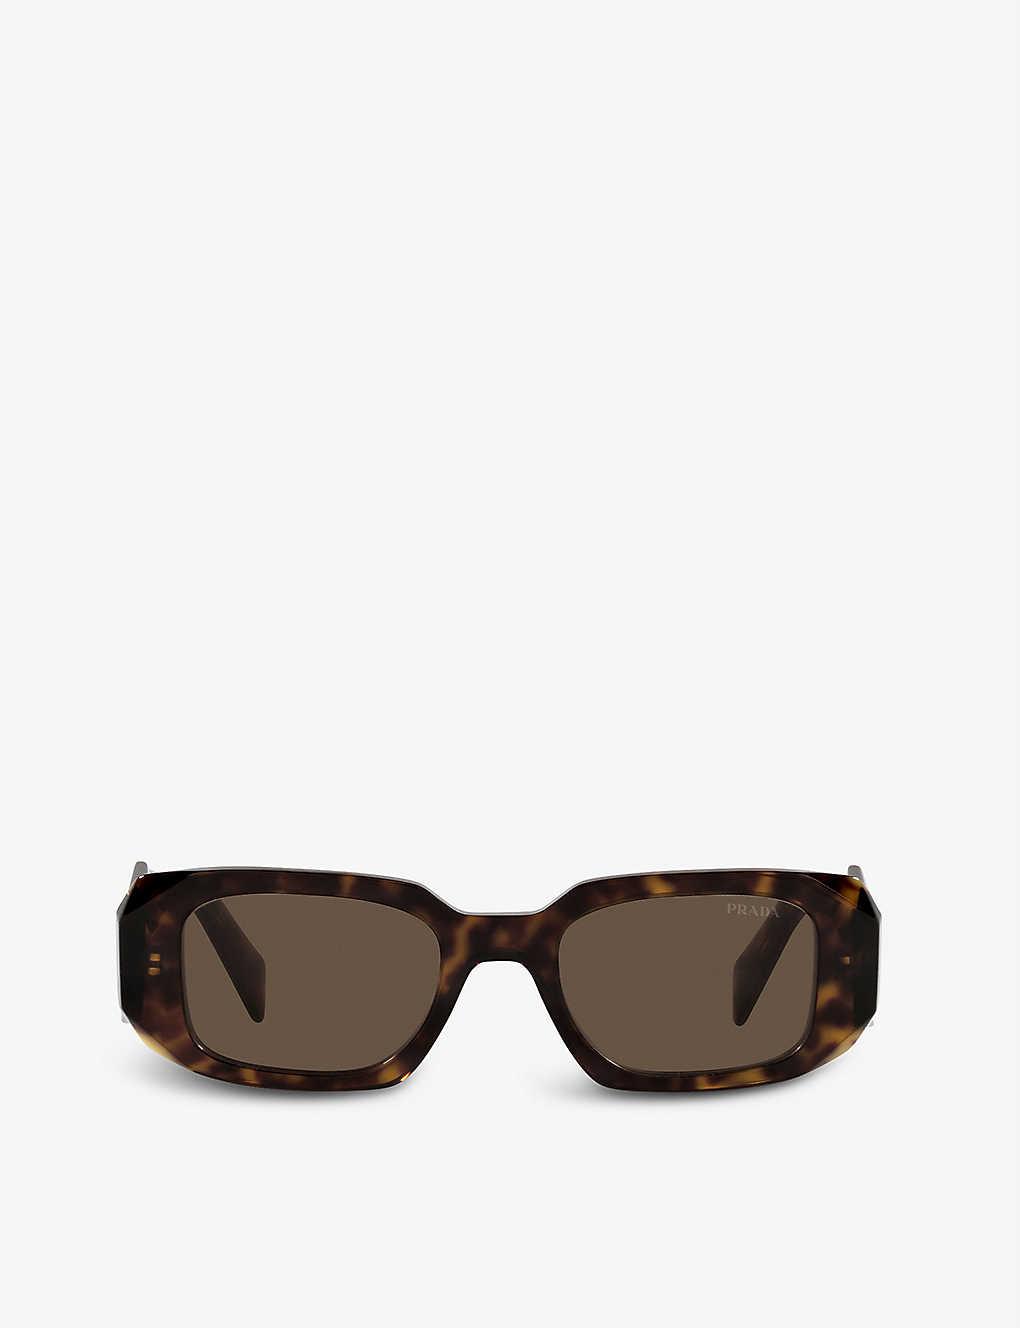 Prada Pr 17ws Rectangular-frame Tortoiseshell Sunglasses in Brown | Lyst UK